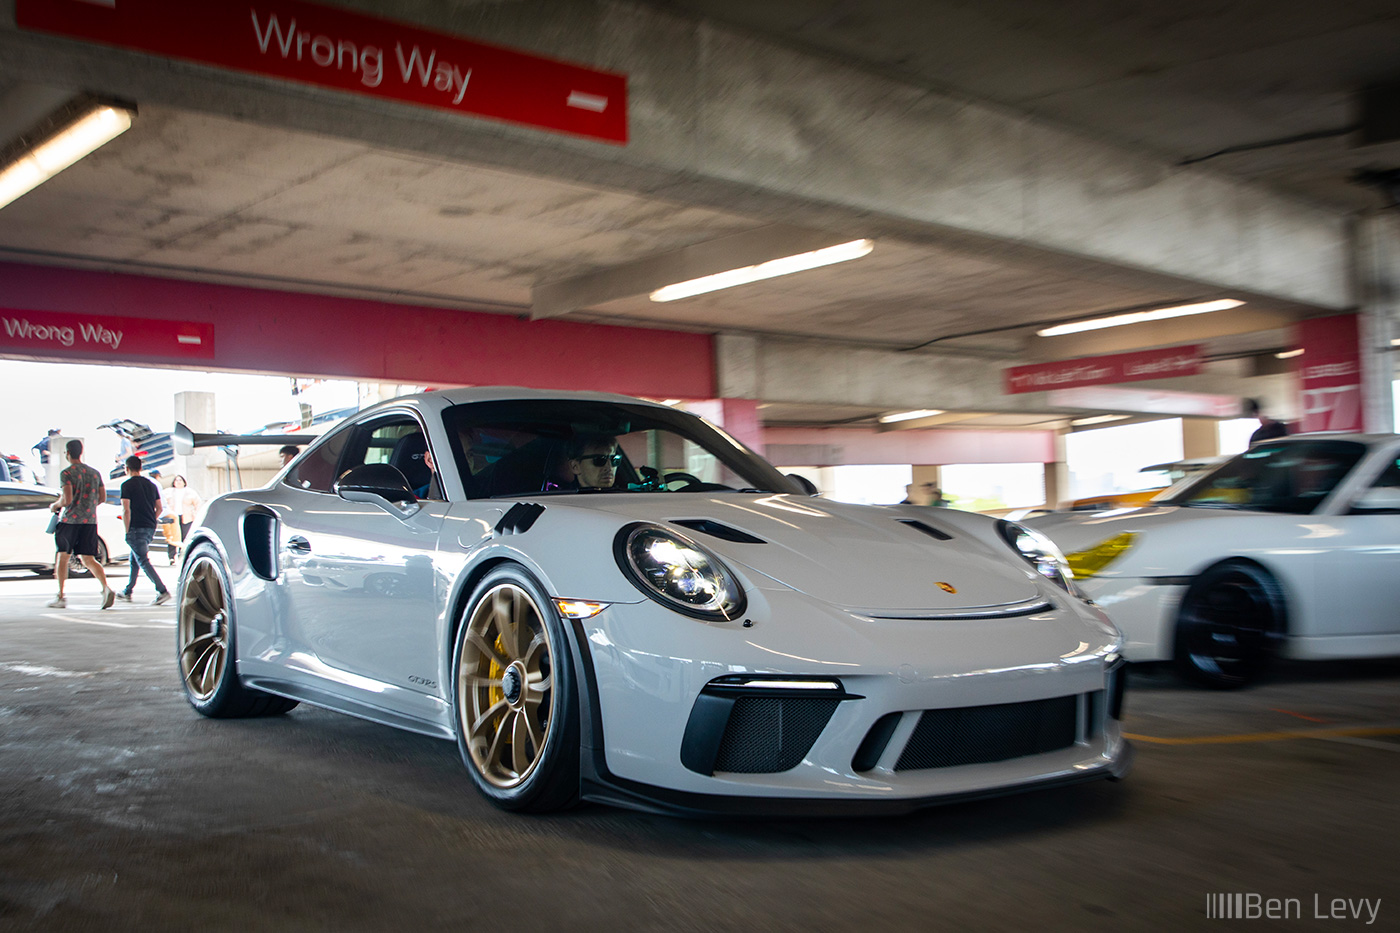 Grey Porsche 911 GT3 RS in Parking Garage